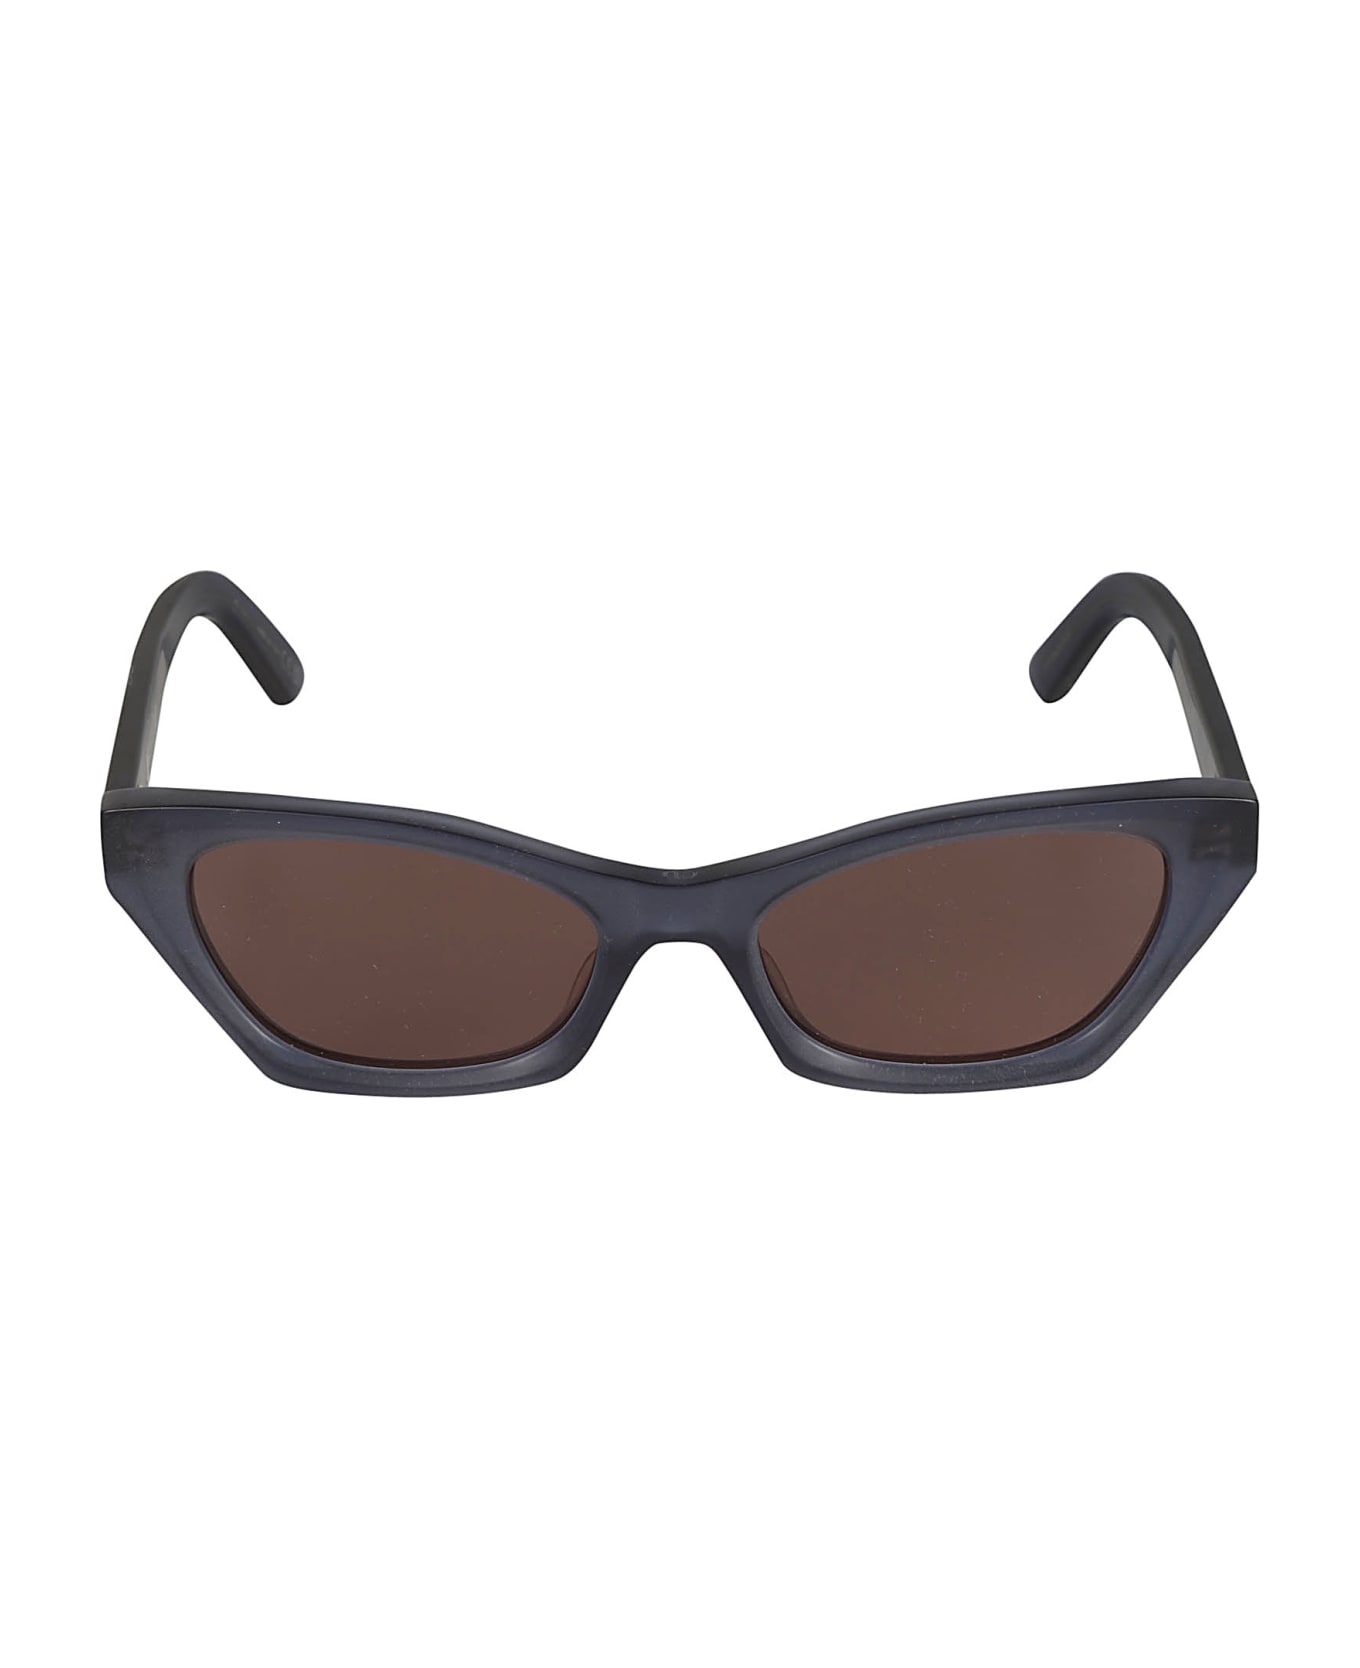 Dior Eyewear Midnight Sunglasses - 31f0 サングラス